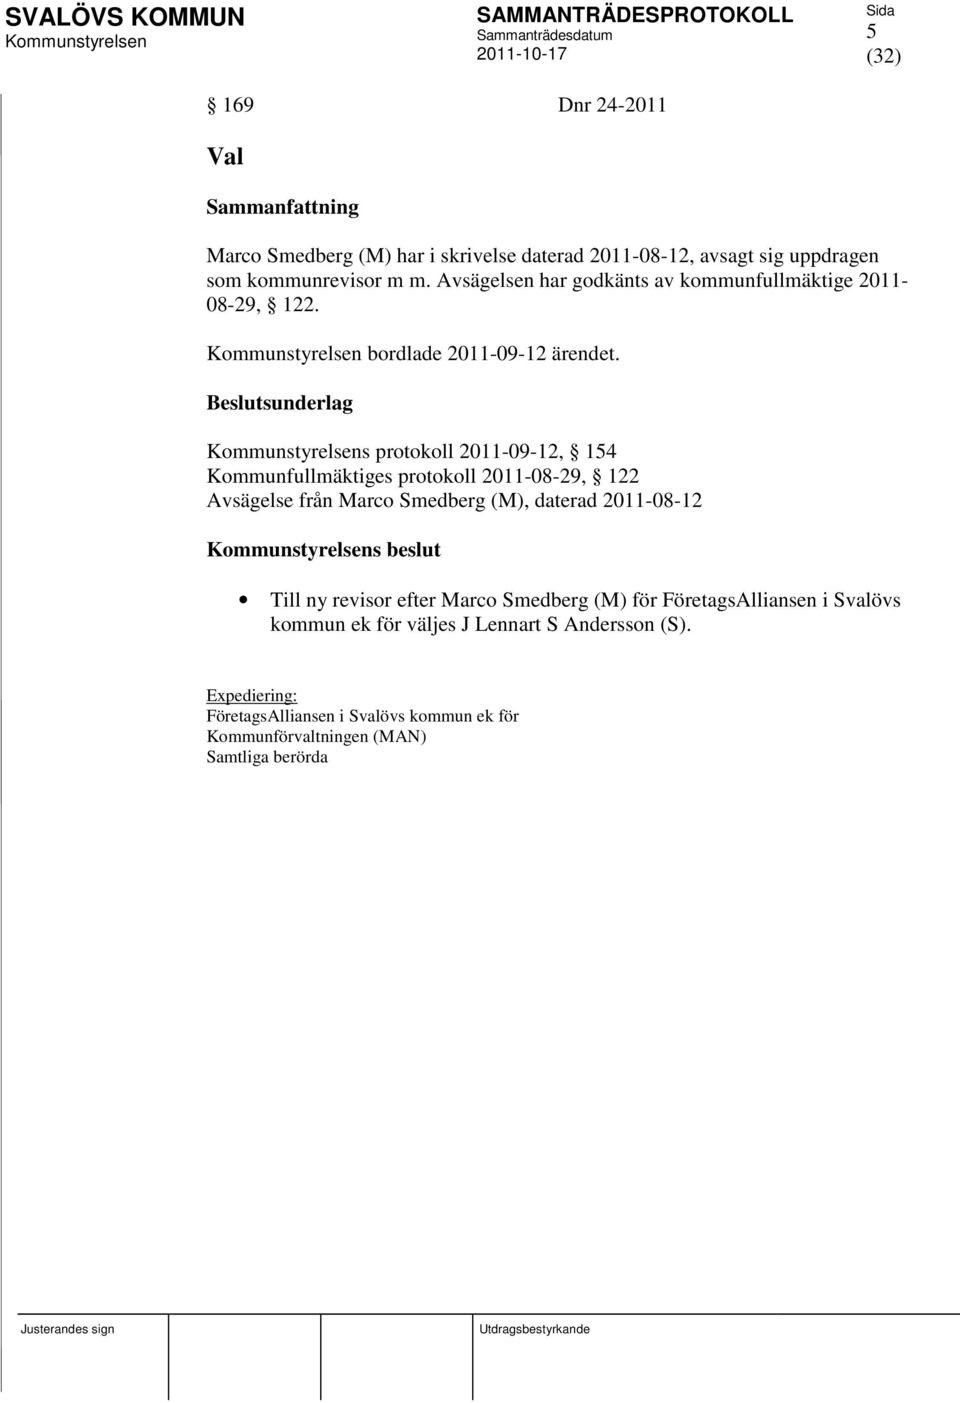 s protokoll 2011-09-12, 154 Kommunfullmäktiges protokoll 2011-08-29, 122 Avsägelse från Marco Smedberg (M), daterad 2011-08-12 s beslut Till